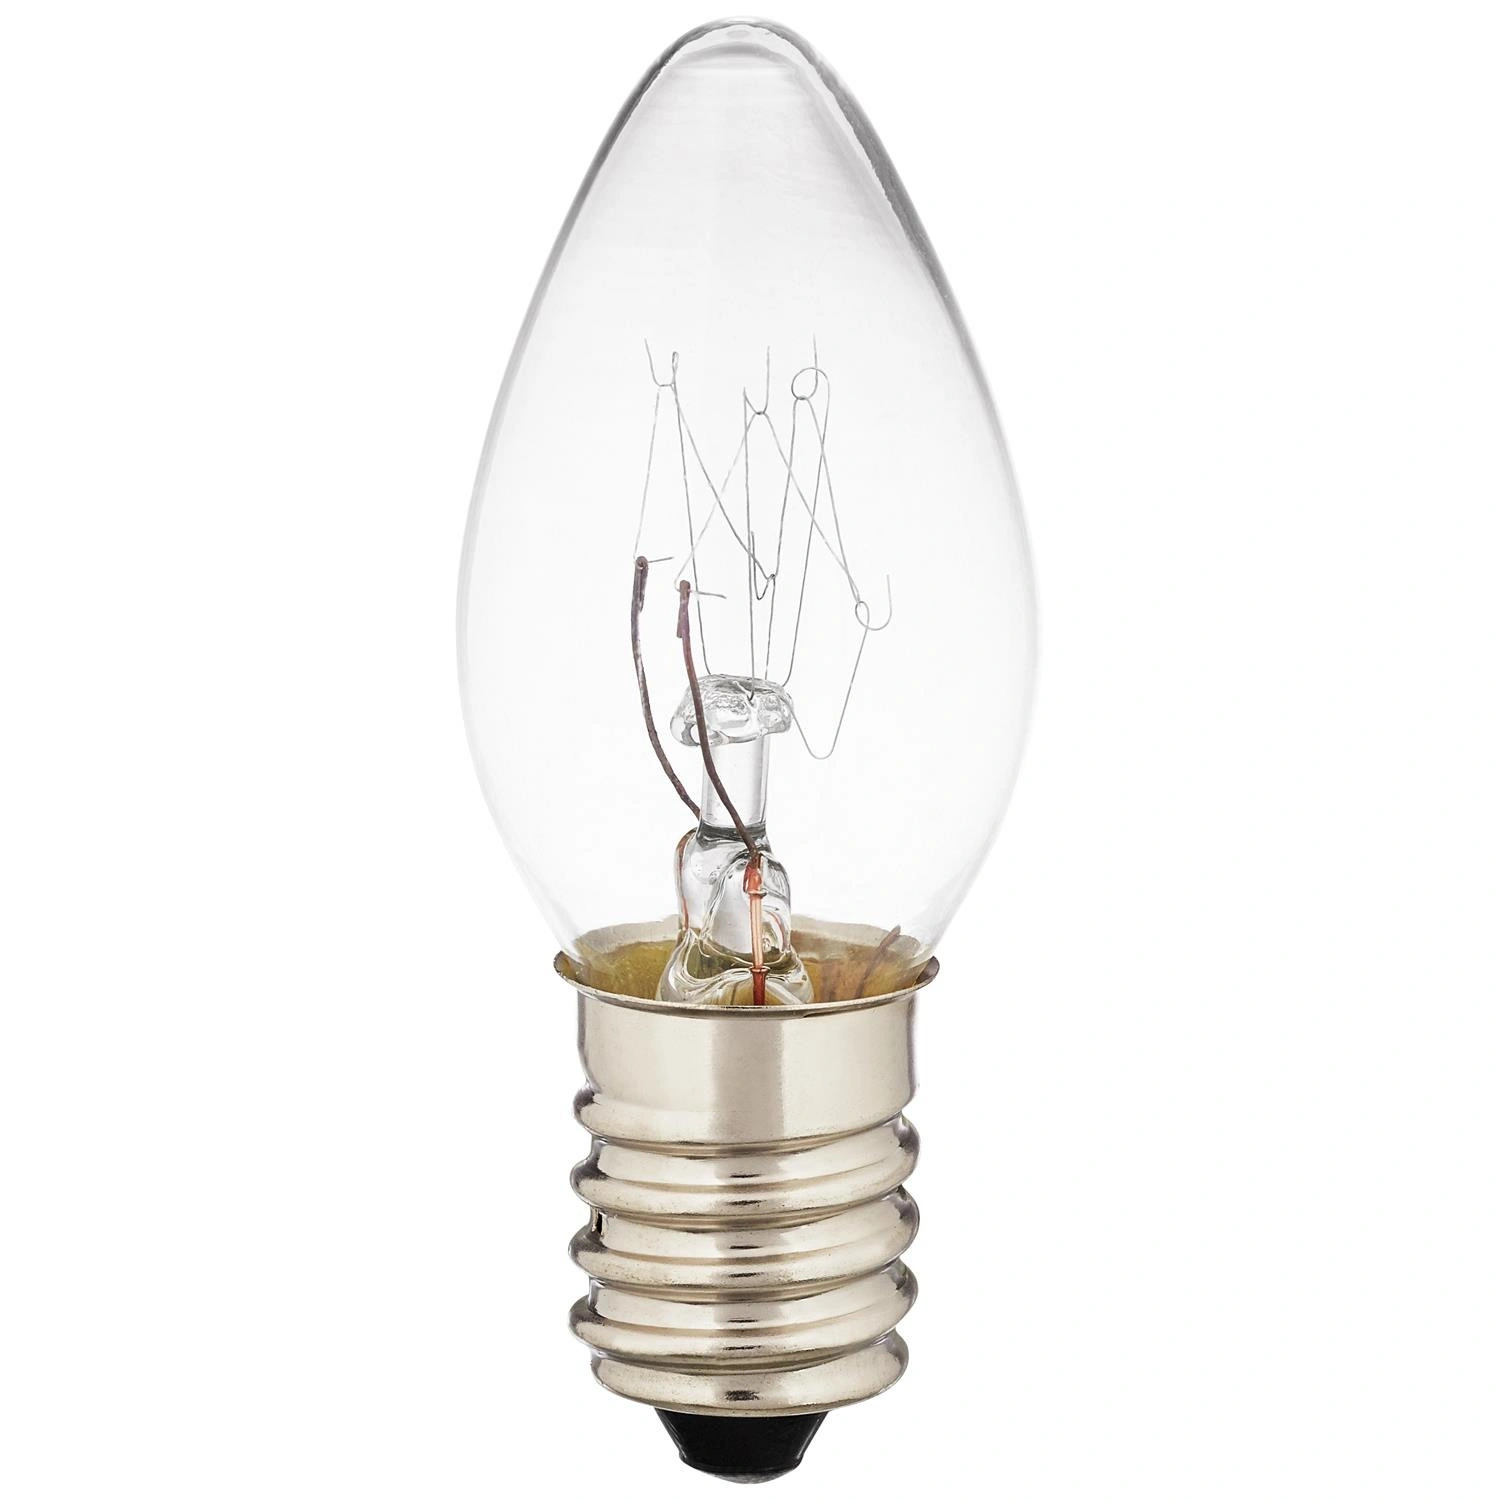 REV LED-Leuchtmittel, 5 W, E14, 30 lm warmweiß, K, 2700